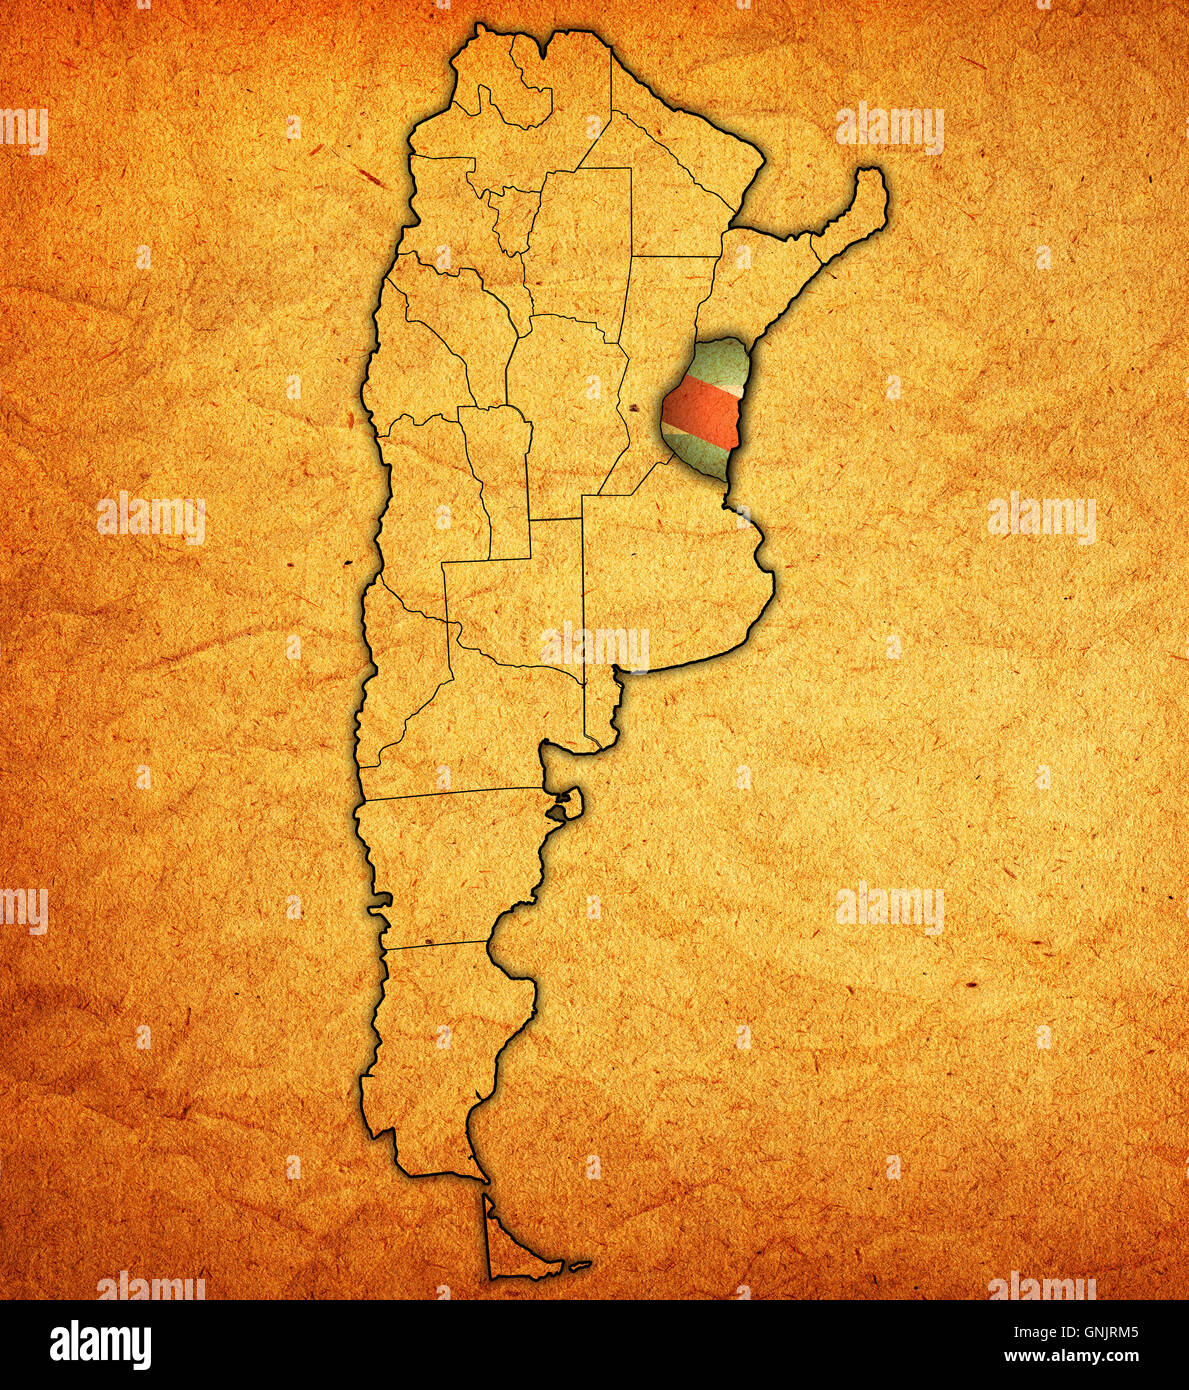 Entre Ríos Región Con Bandera En El Mapa De Las Divisiones Administrativas De Argentina 4030